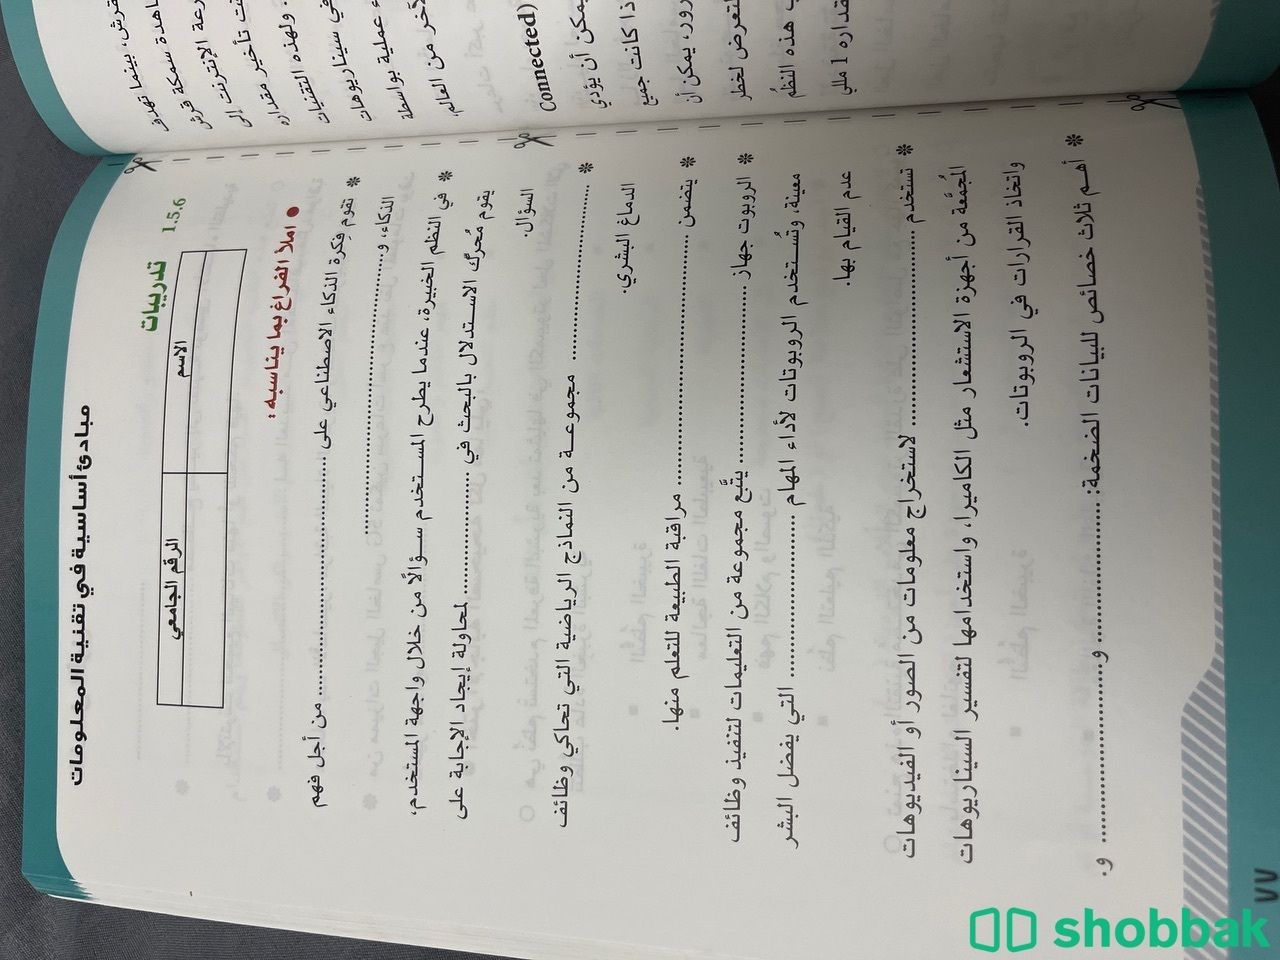 كتاب تقنية المعلومات Shobbak Saudi Arabia